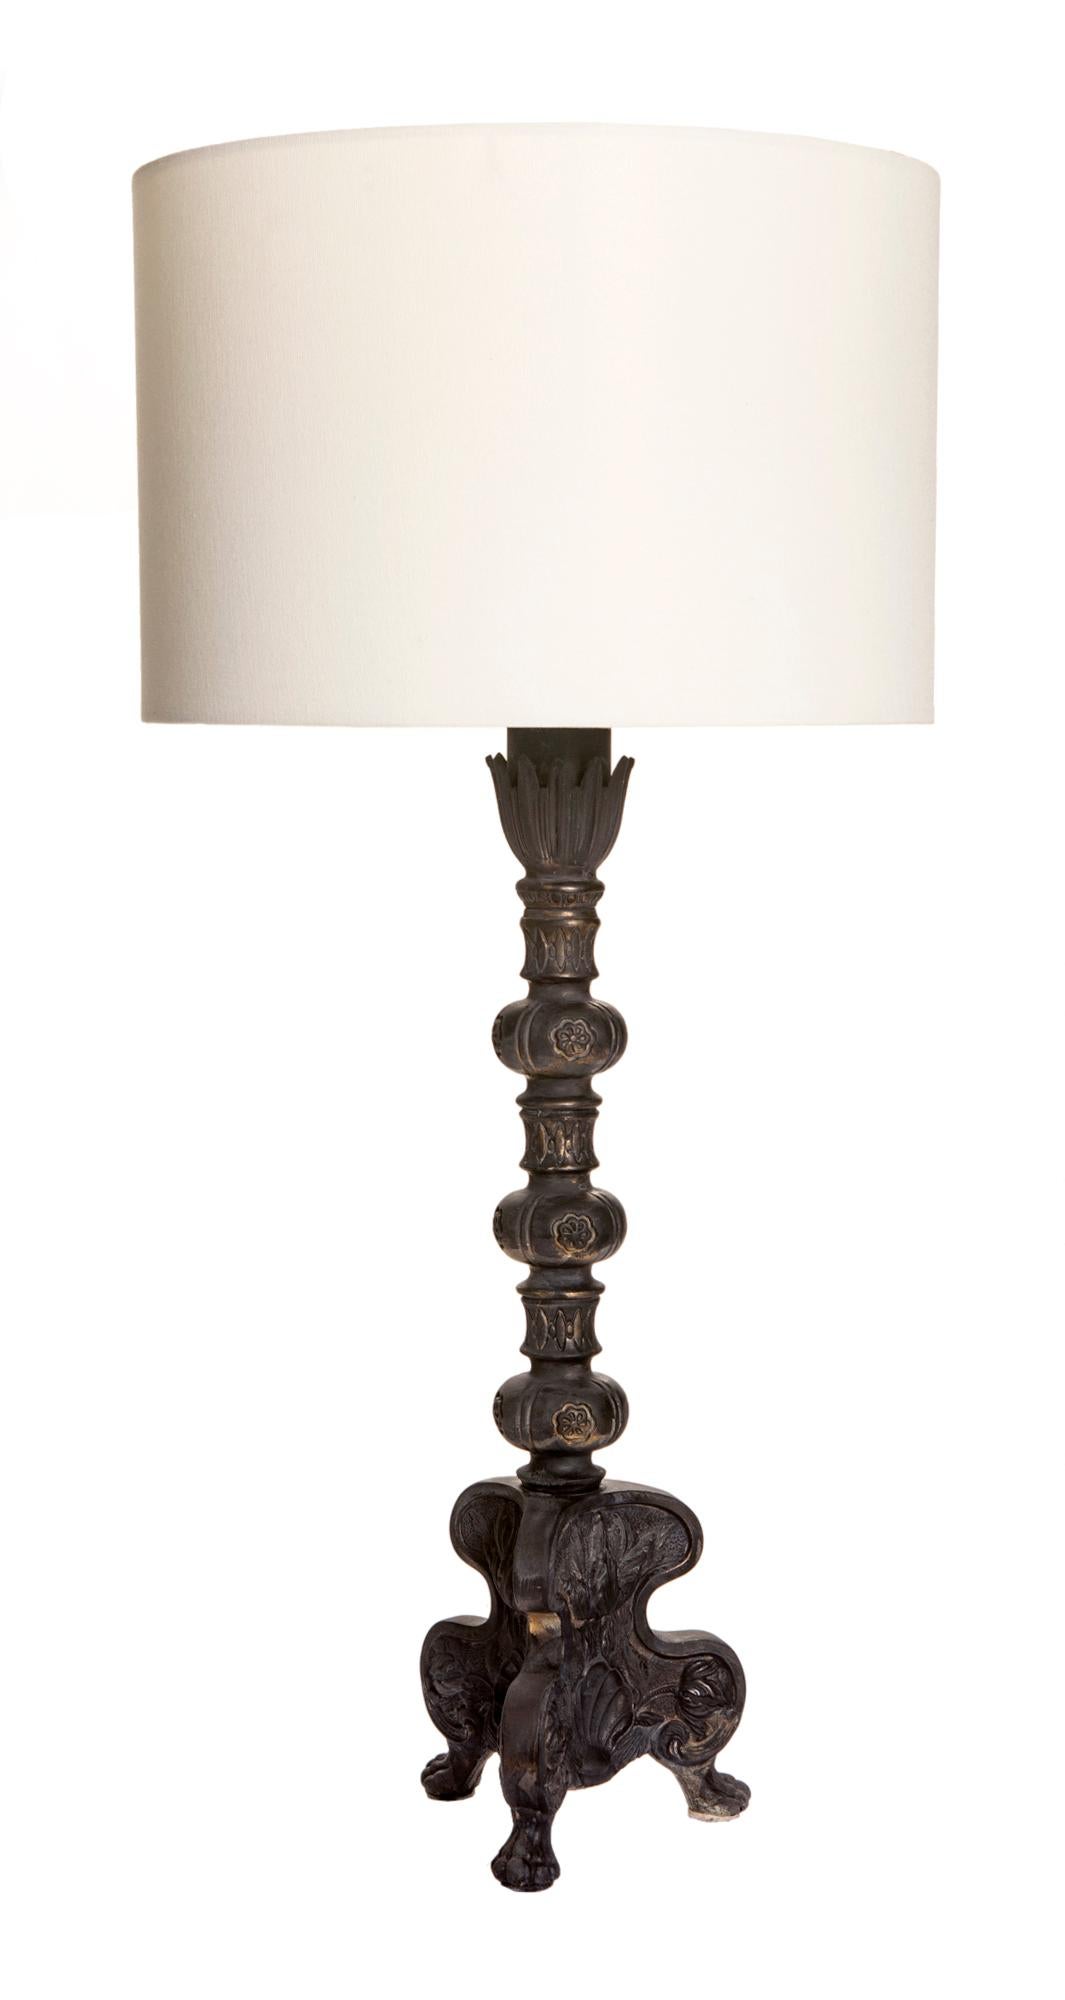 Lampe chandelier en métal moulé blanc peint à la main avec motif de coquillage et colonne décorative reposant sur trois pieds décoratifs. L'abat-jour est pour affichage seulement.

